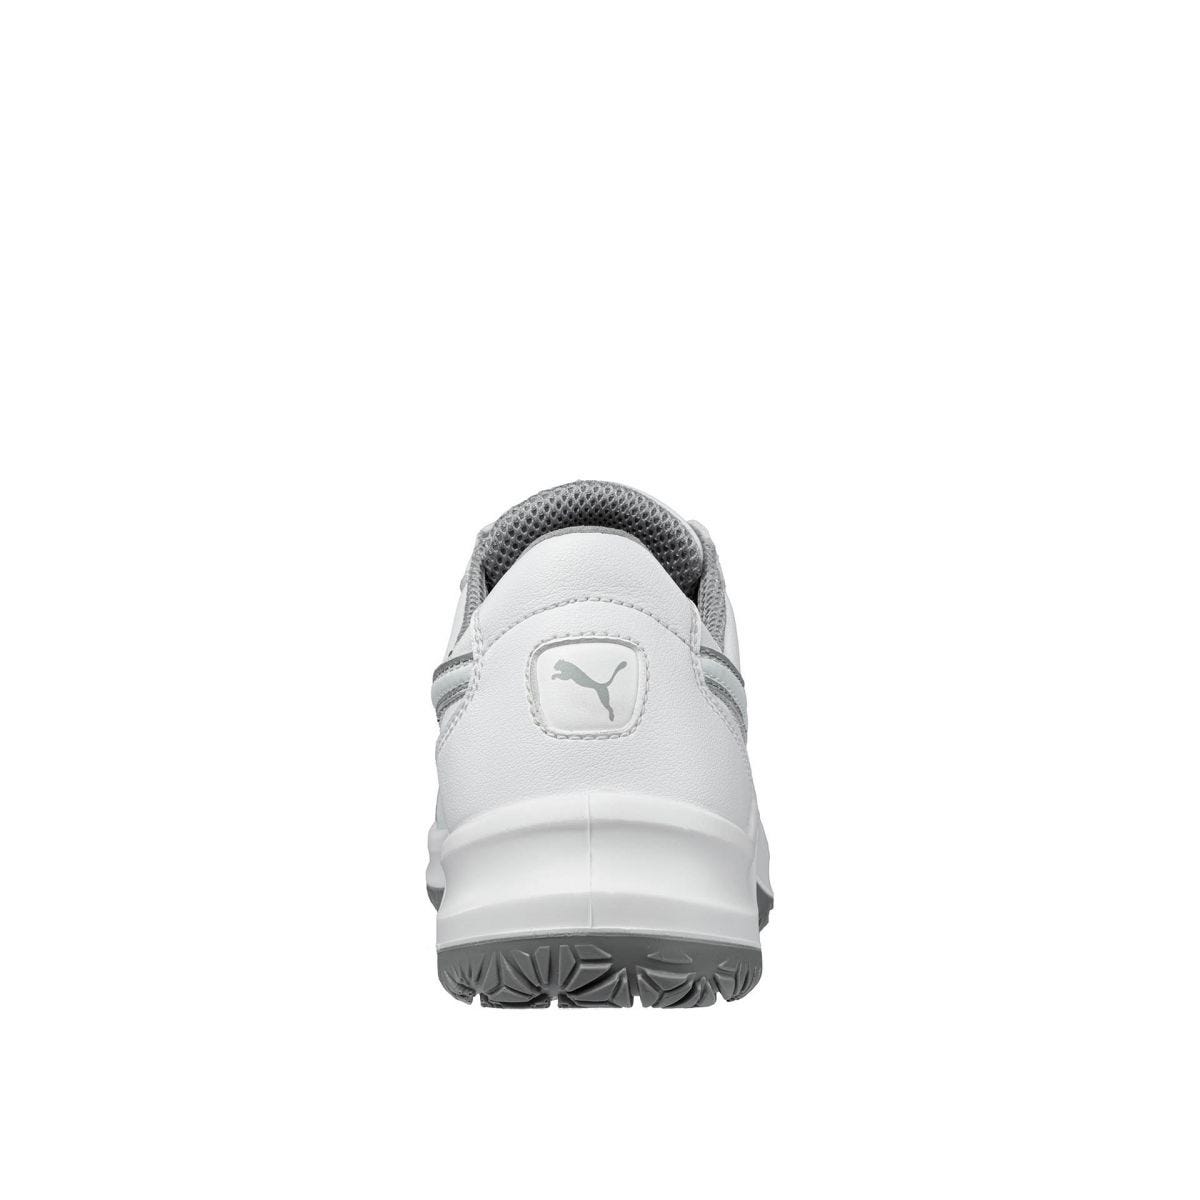 Chaussures de sécurité Clarity low S2 SRC - Puma - Taille 42 1